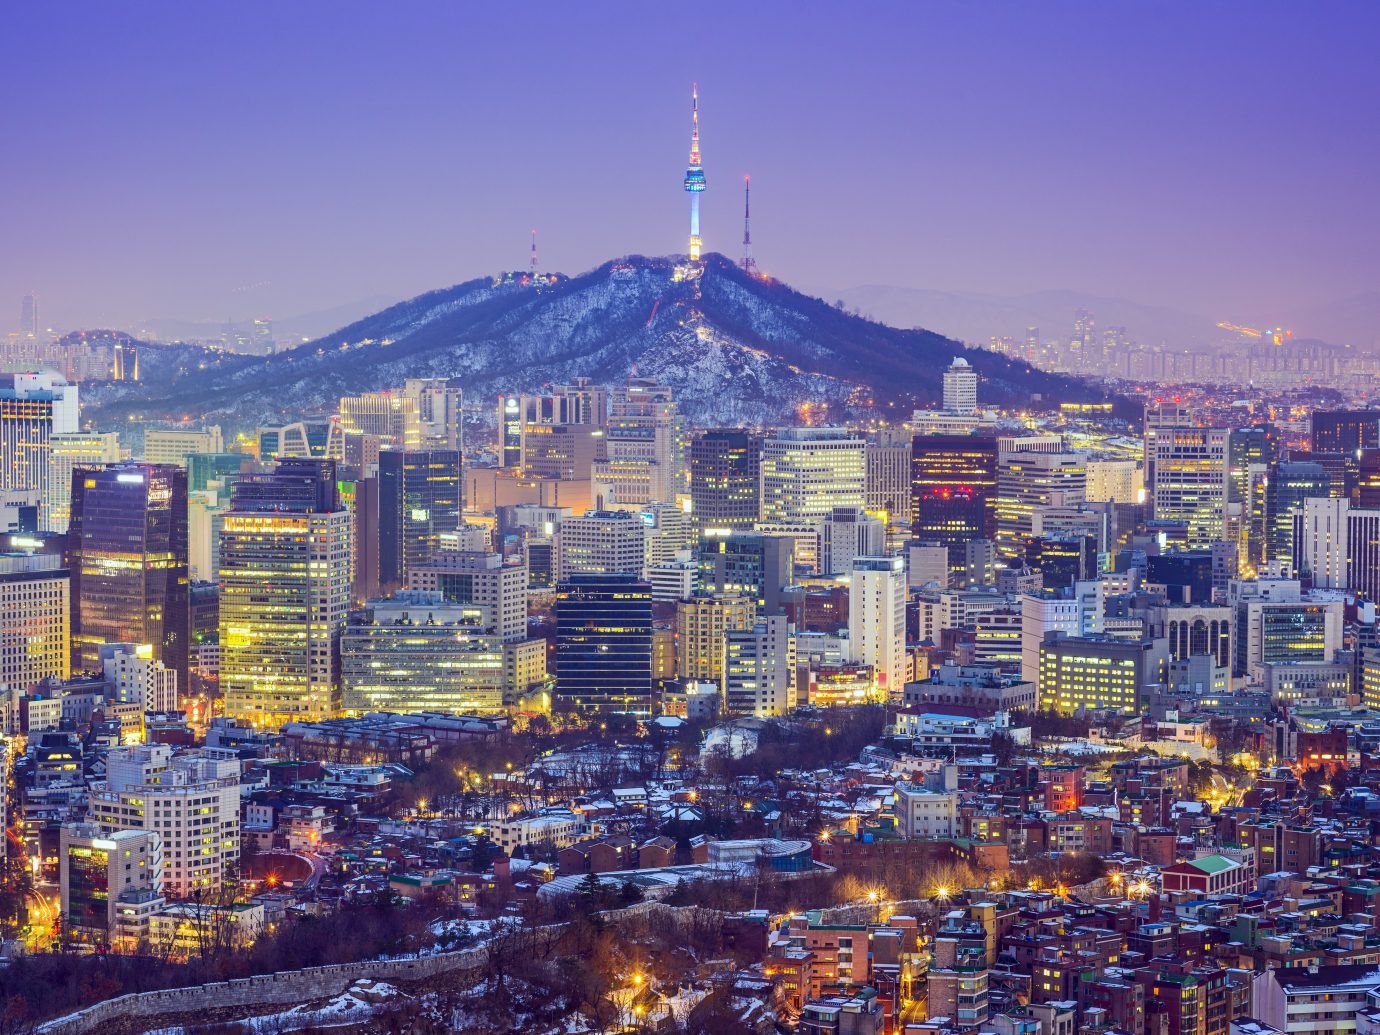 Seou, South Korea city skyline at twilight.